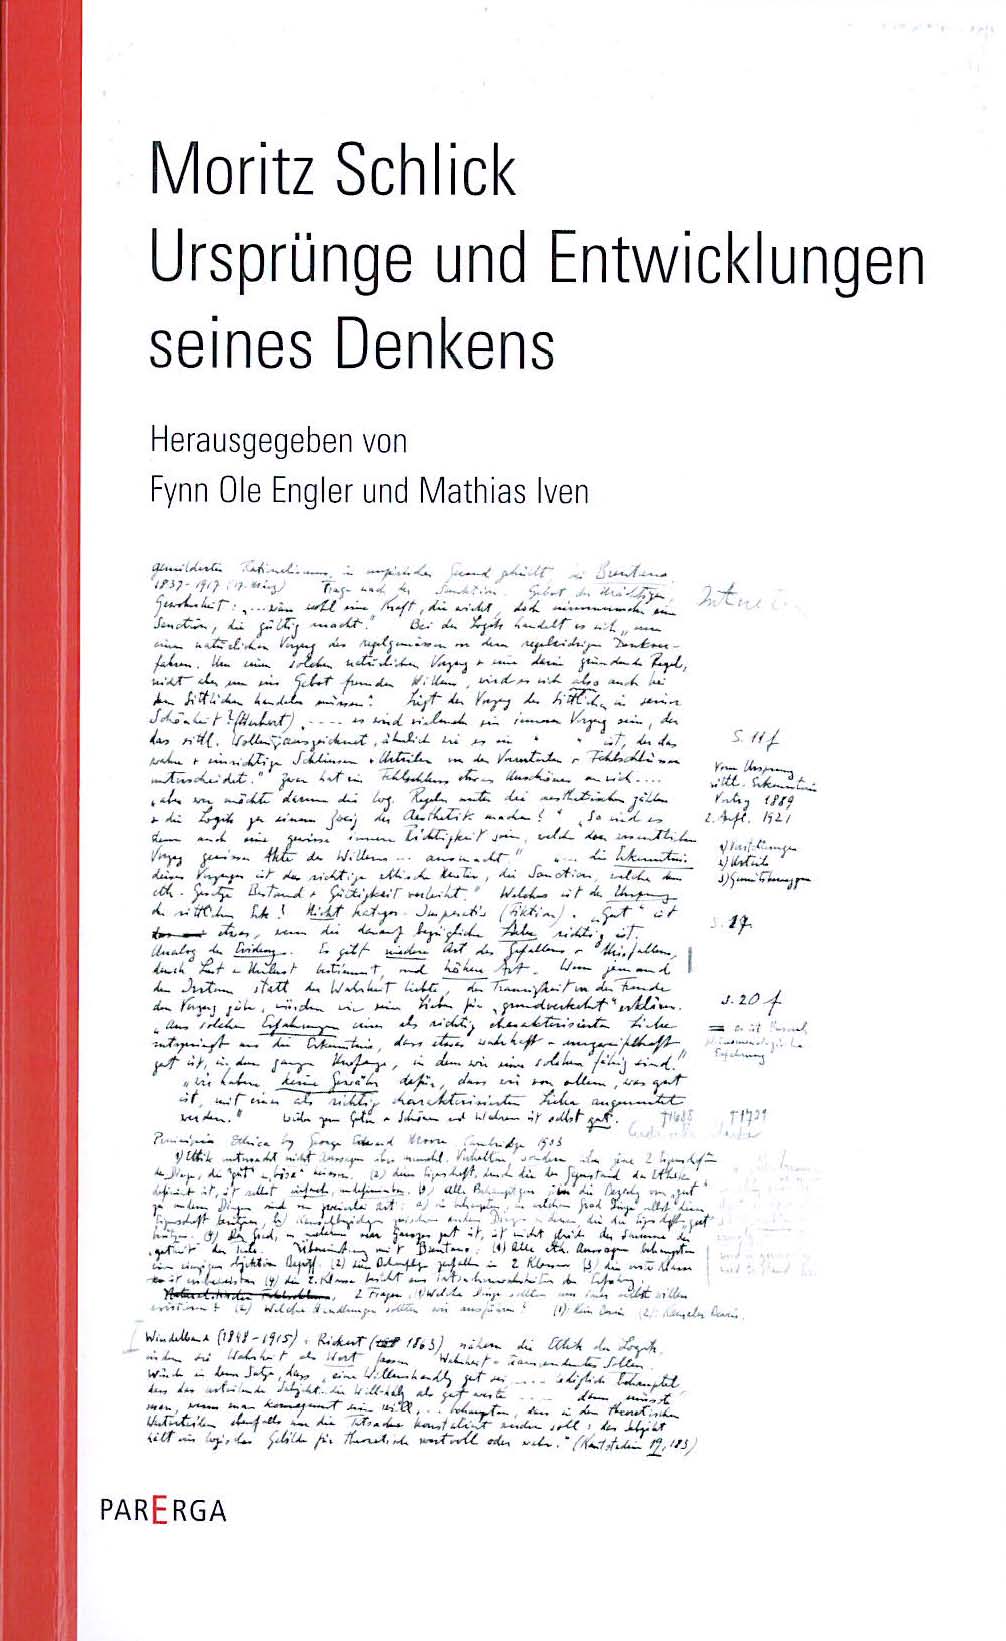 book cover: Engler/ Ivan: Moritz Schlick: Ursprünge und Entwicklungen seines Denkens (2010)